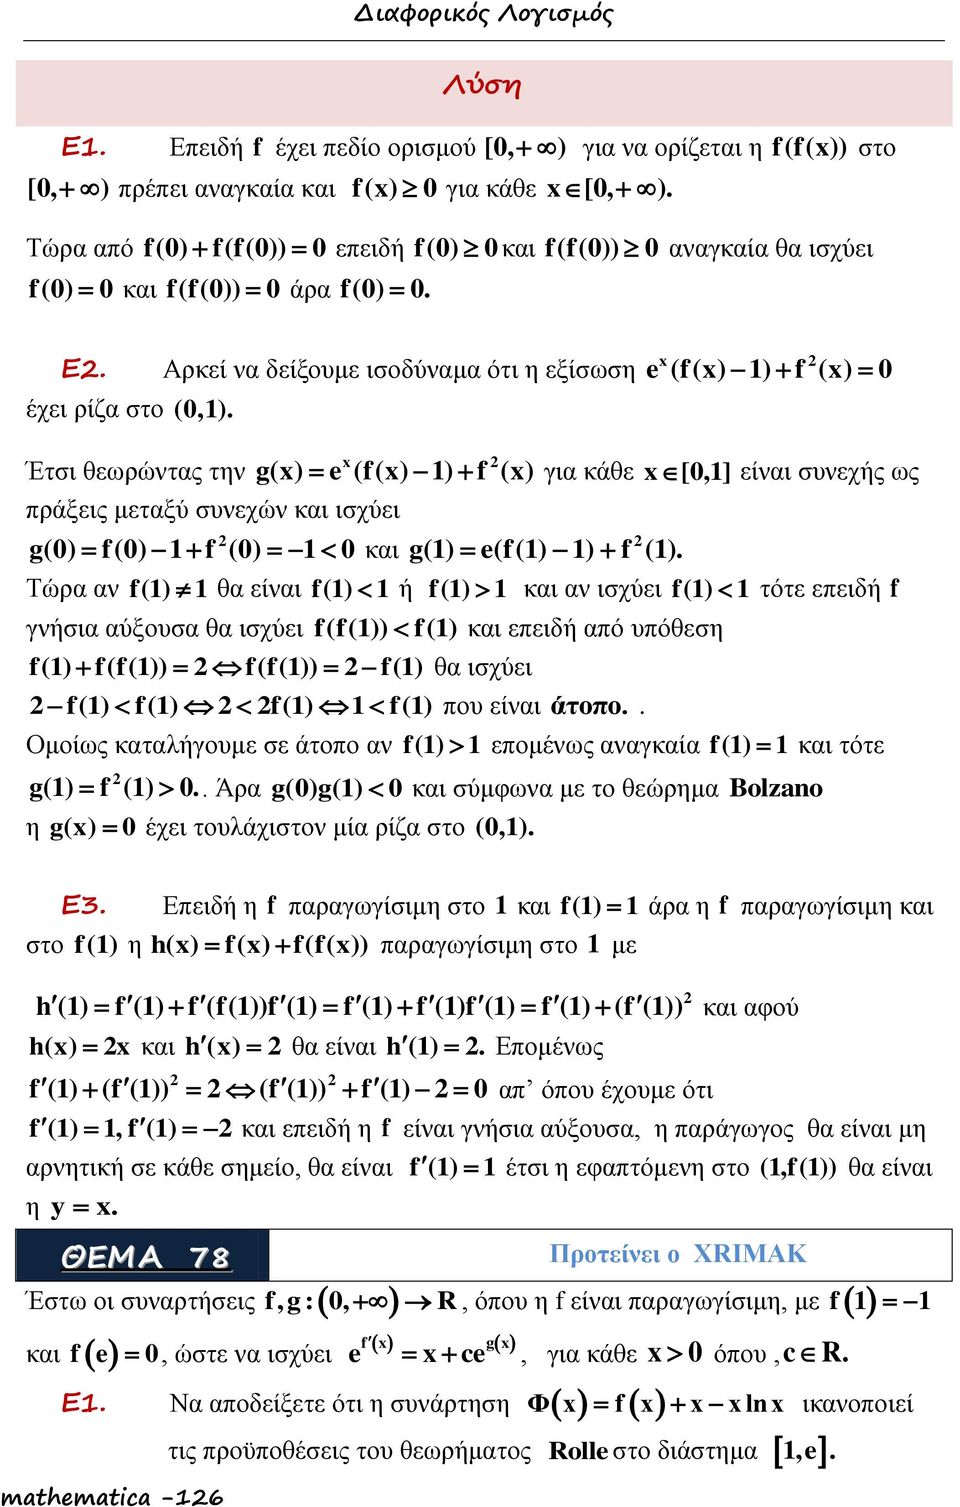 Έτσι θεωρώντας την g() (f() ) f () πράξεις μεταξύ συνεχών και ισχύει g() f() f () και g() (f() ) f ().